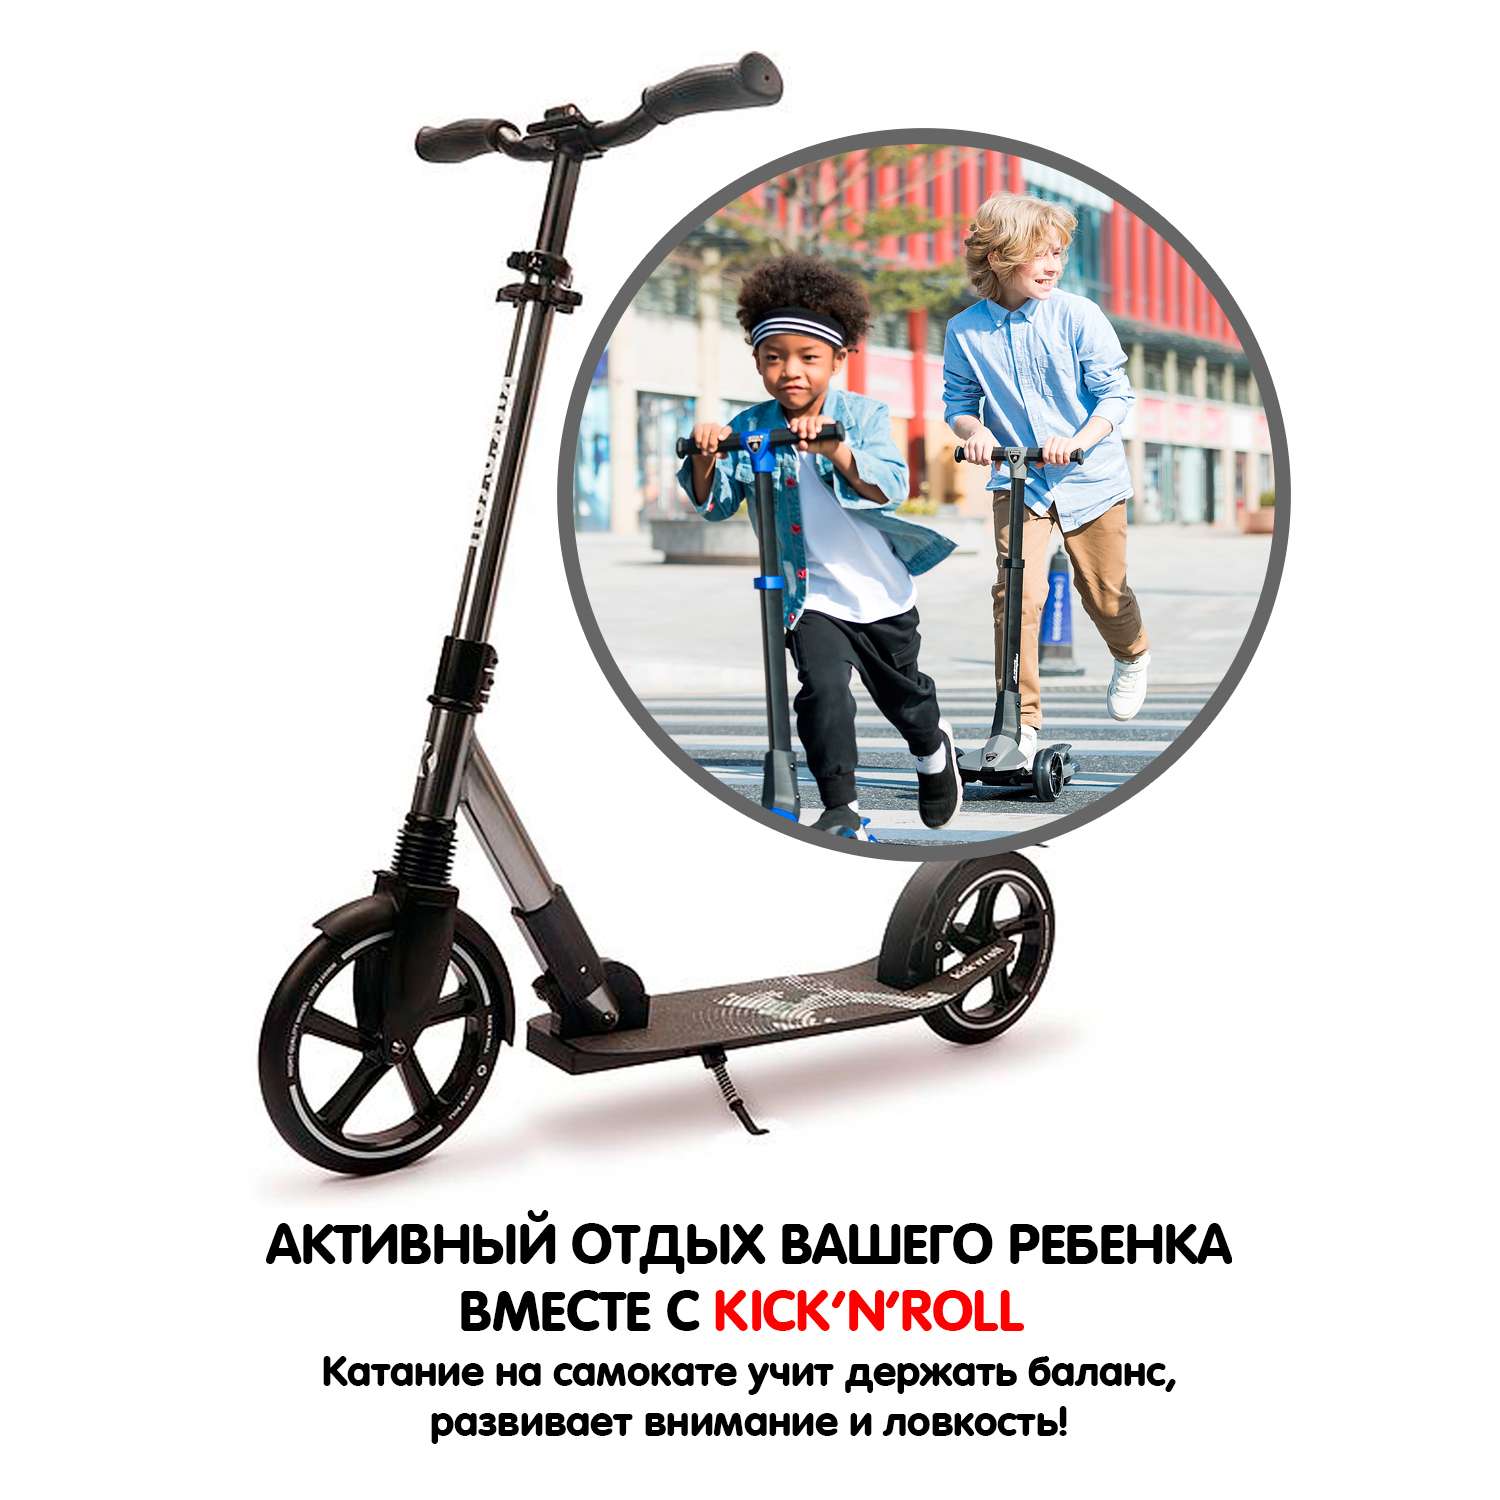 Самокат детский kick n roll складной алюминиевый чёрно-серебристого цвета с амортизатором колеса 230 мм - фото 10